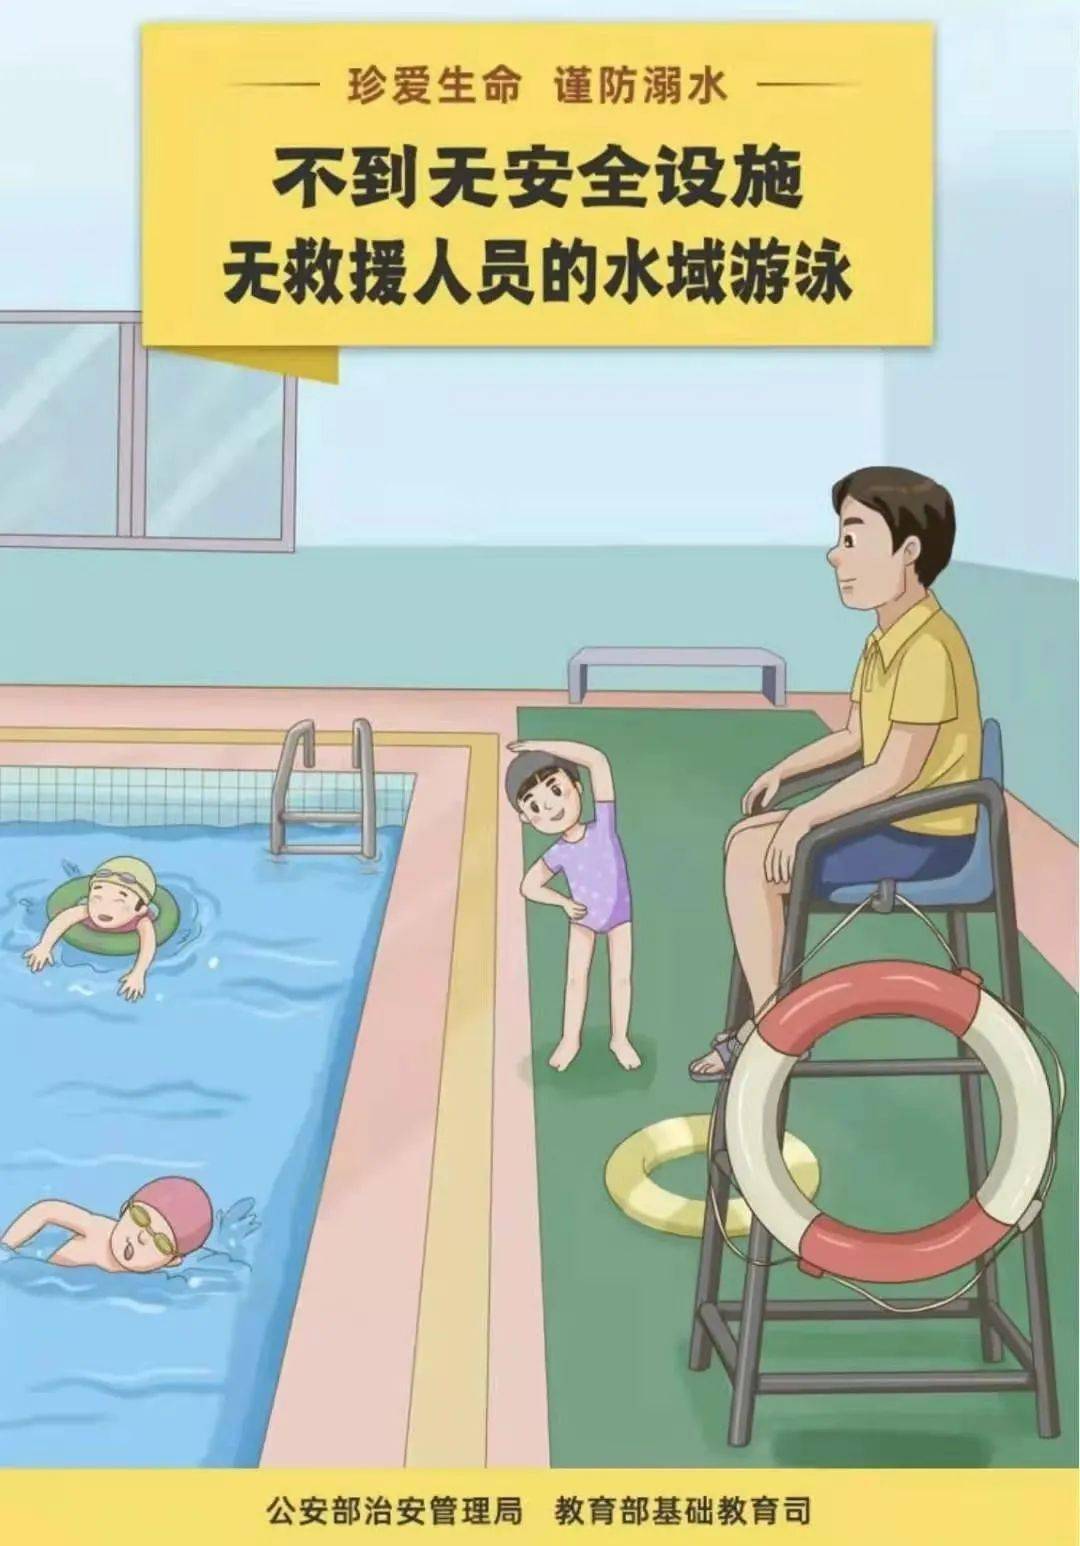 防溺水安全怎样写美观 家长作出防溺水承诺书